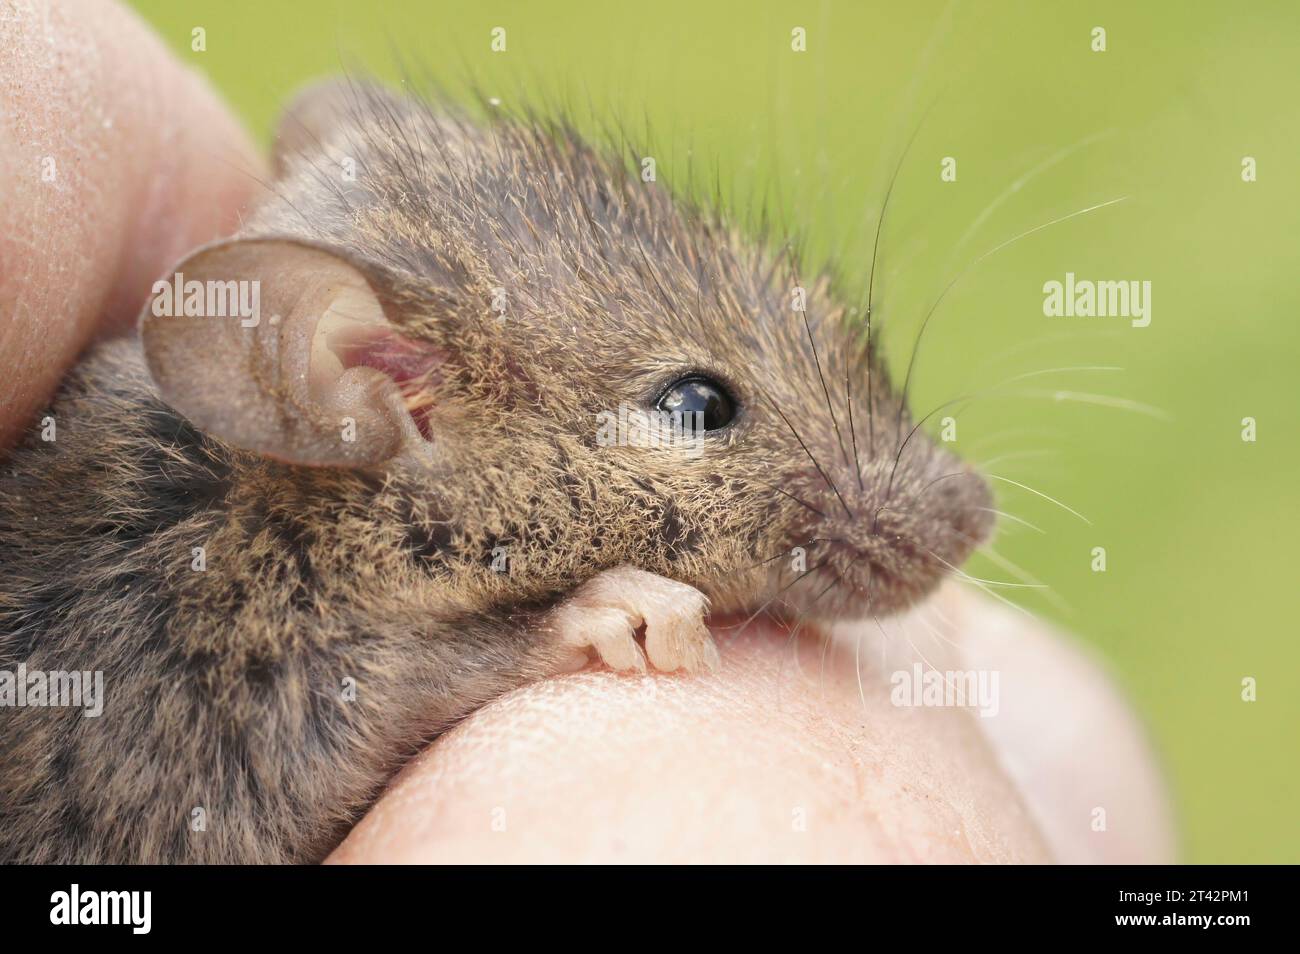 Gros plan naturel sur un mignon jeune juvénile moelleux souris de maison commune européenne Mus musculus dans une main Banque D'Images